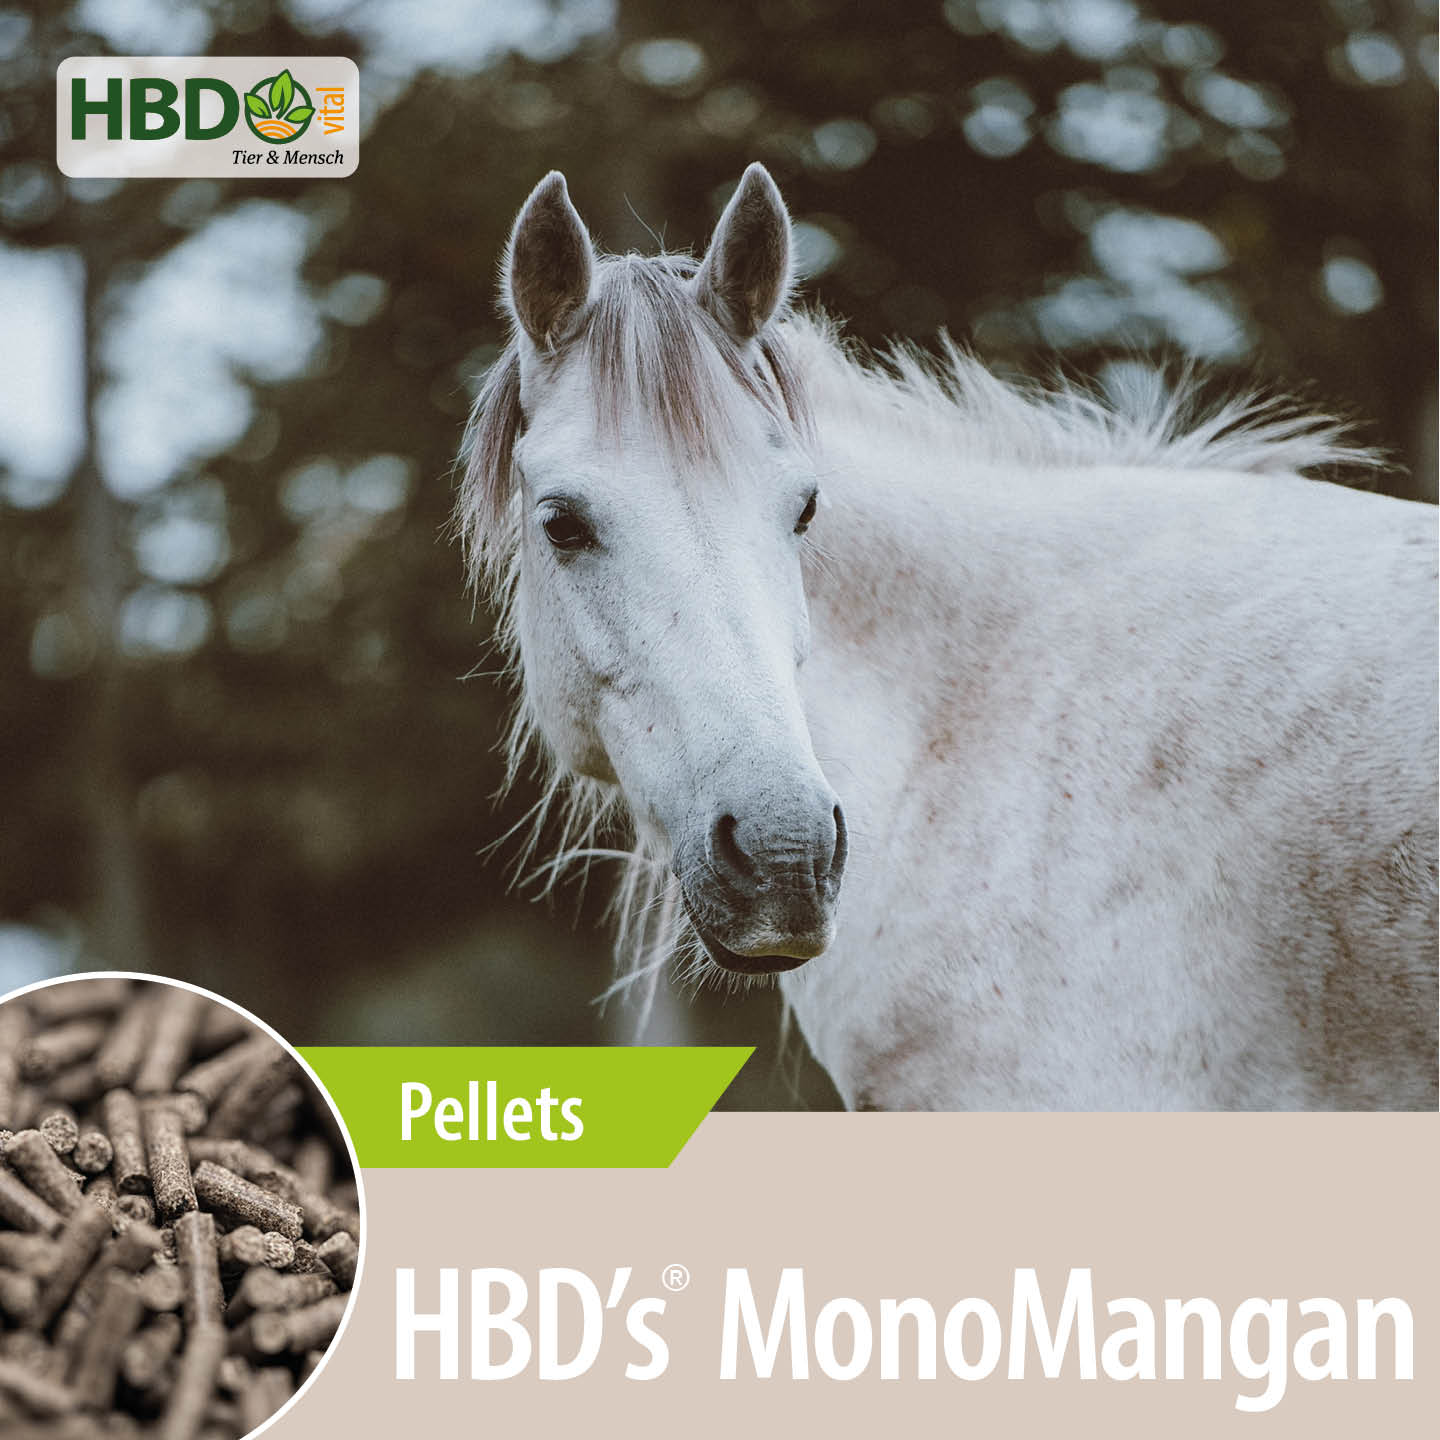 Shopbild für HBD’s MonoMangan - Das Bild zeigt den Produktnamen sowie den Hinweis, dass es sich um Pellets handelt. Ein weißes Pferd ist zu sehen.